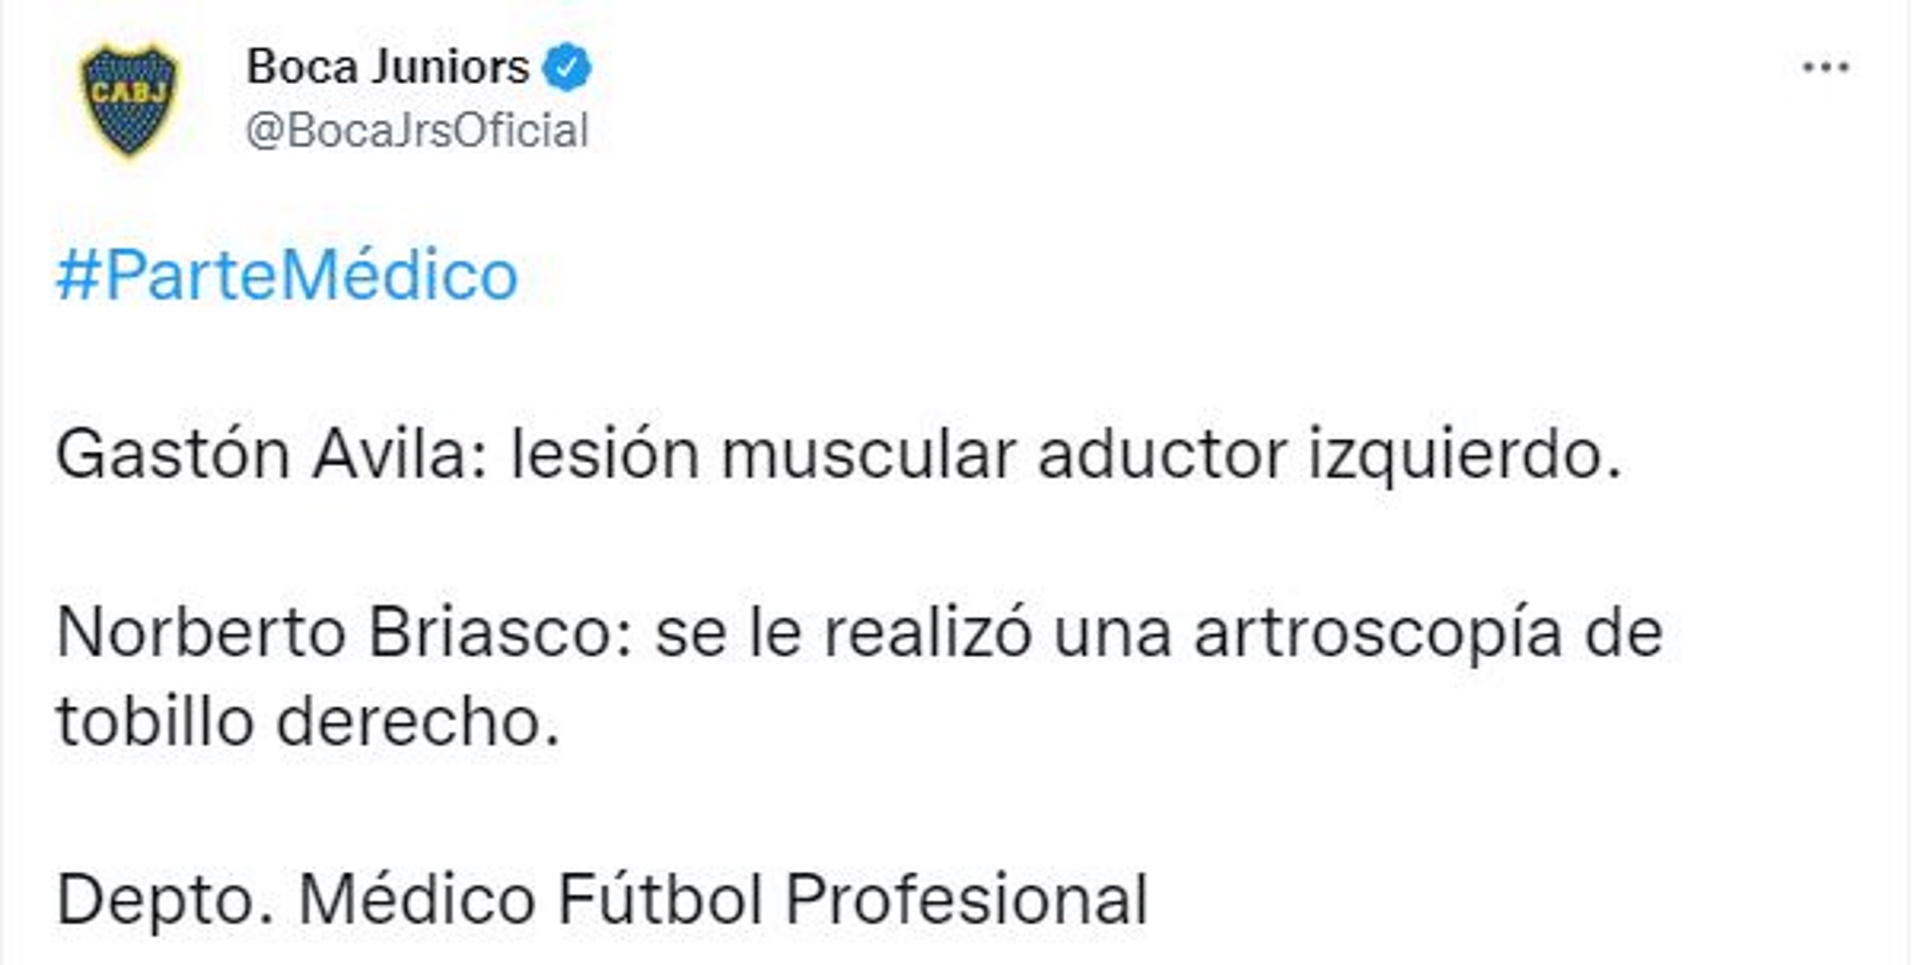 Il Boca Juniors ha confermato l'infortunio di Gastón Ávila